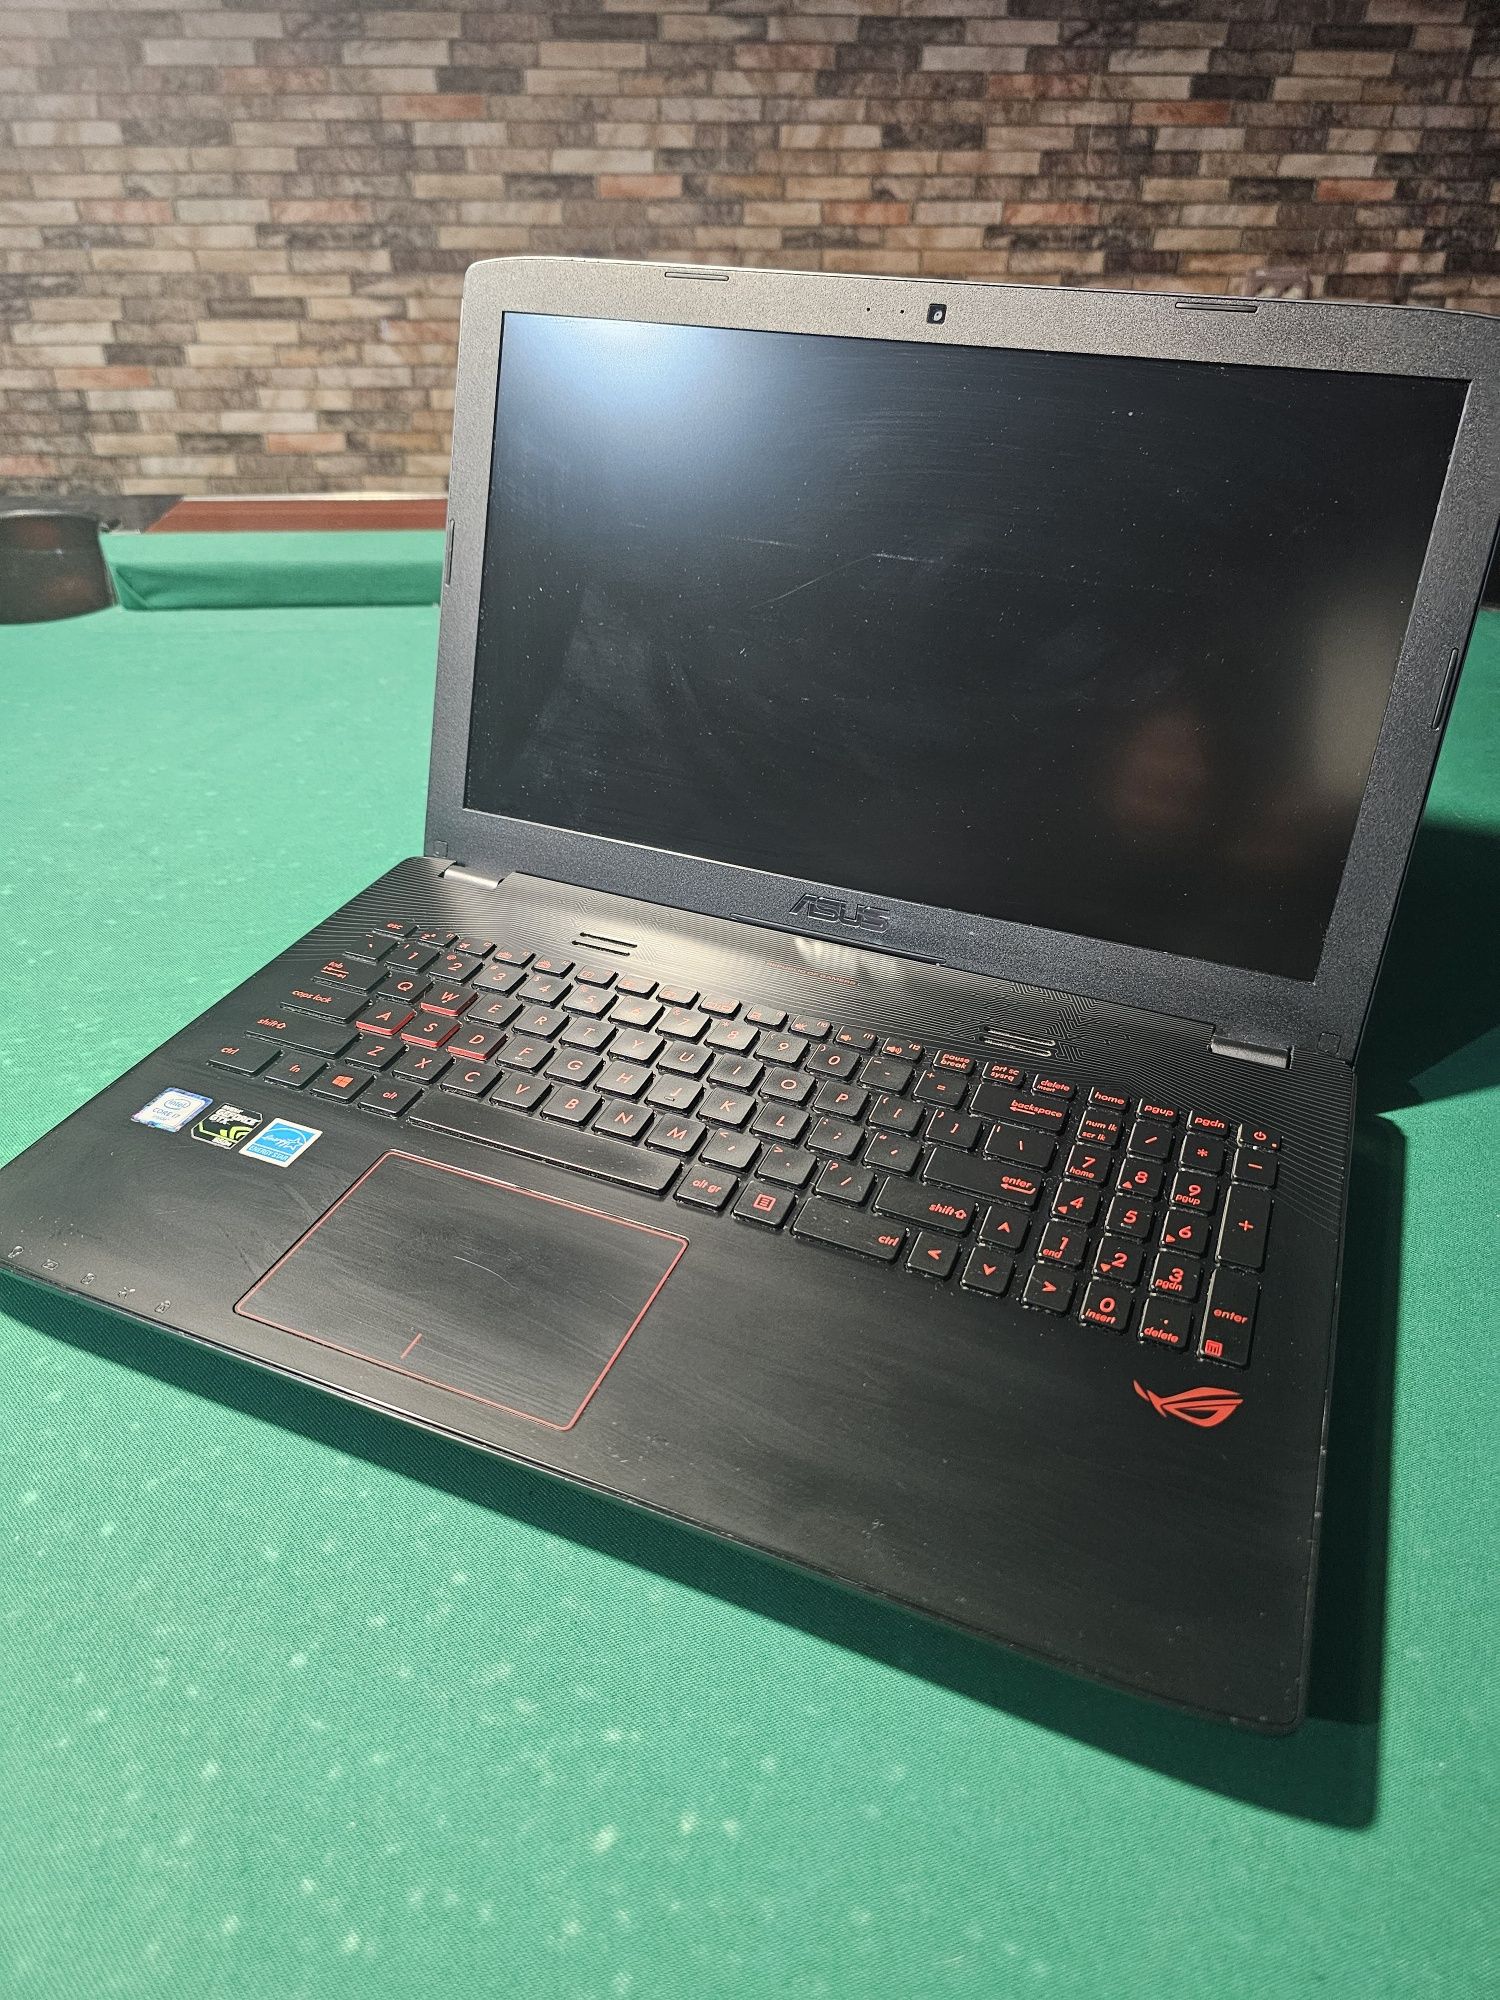 Laptop Asus rog gl552v gaming